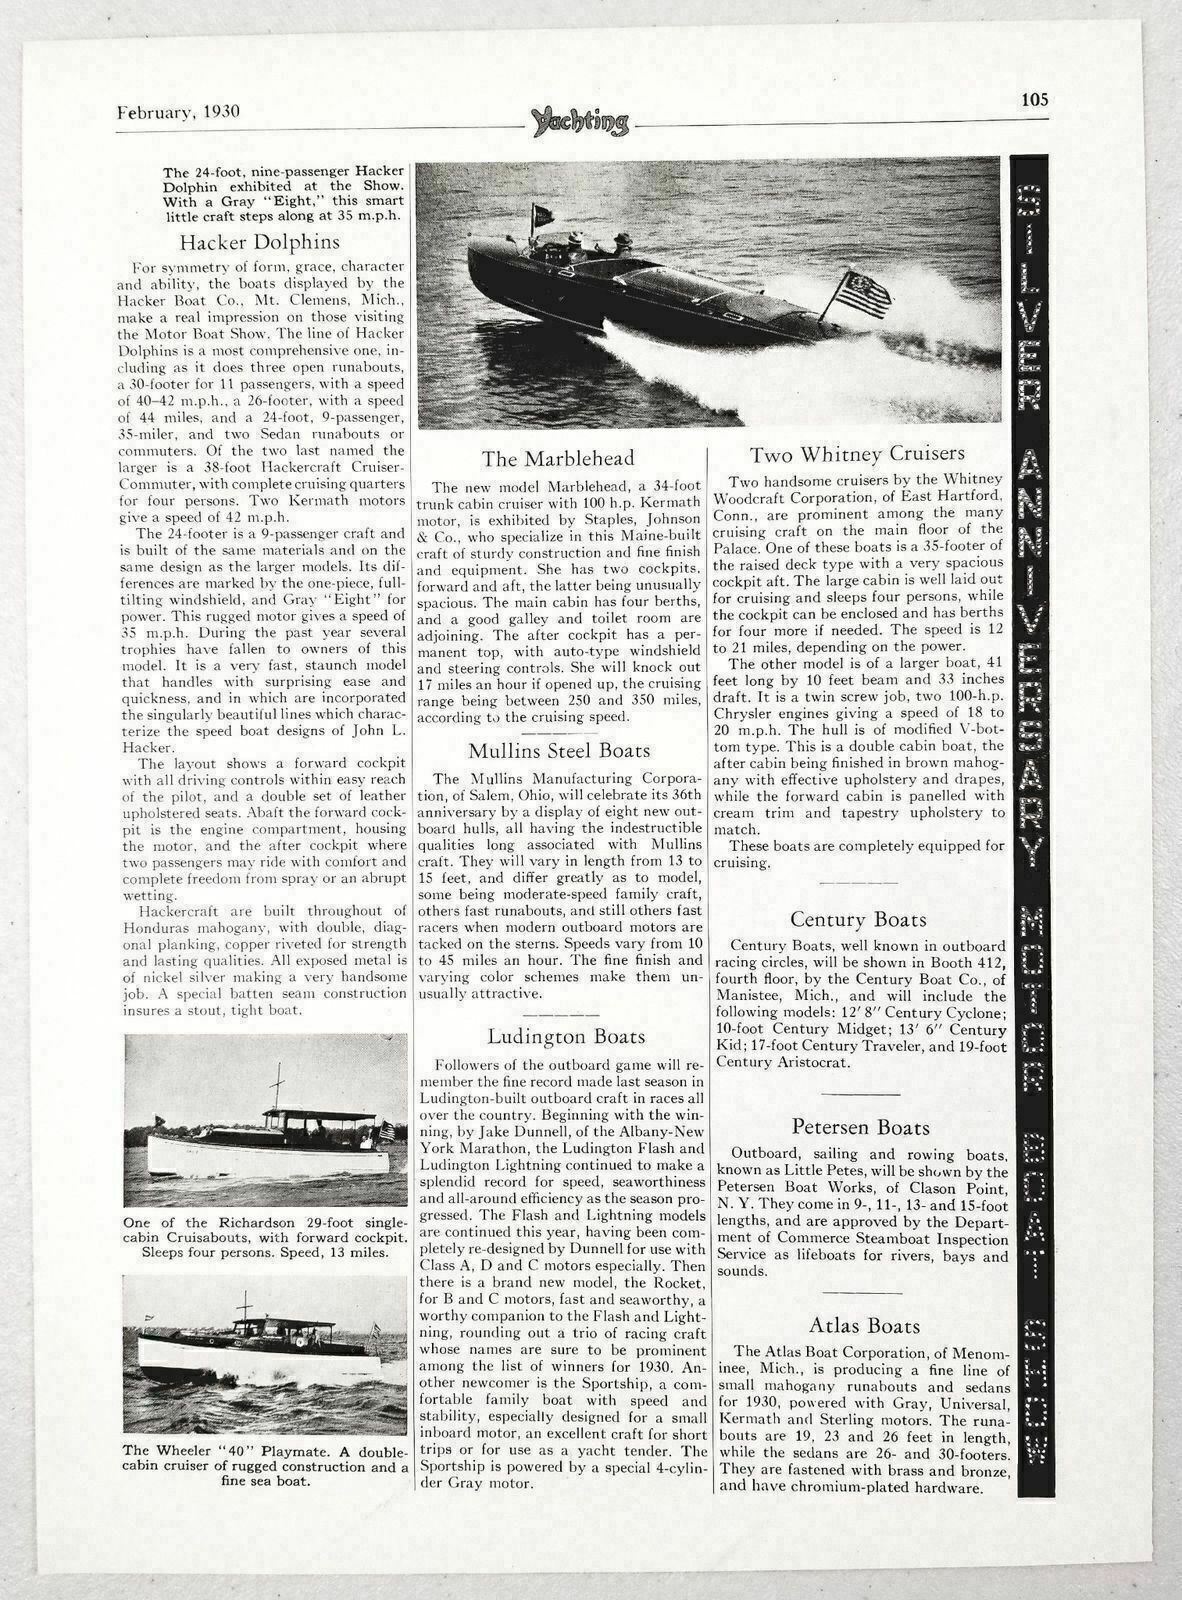 1930 Magazine Photo Hacker Dolphin 24\', Richardson 29, Wheeler 40 Playmate